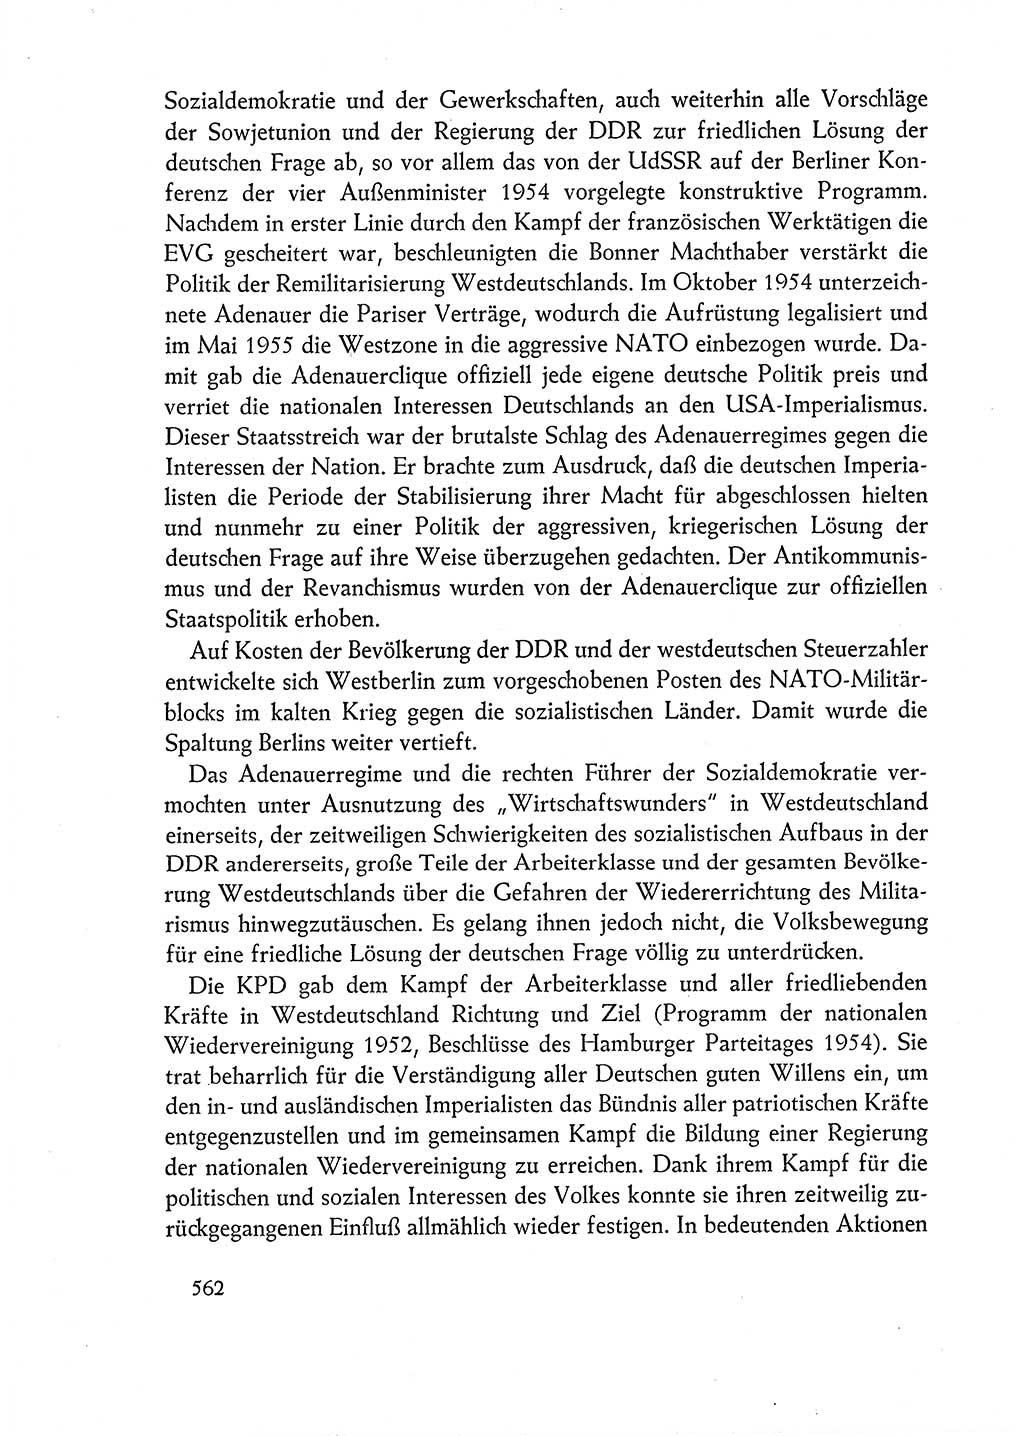 Dokumente der Sozialistischen Einheitspartei Deutschlands (SED) [Deutsche Demokratische Republik (DDR)] 1962-1963, Seite 562 (Dok. SED DDR 1962-1963, S. 562)